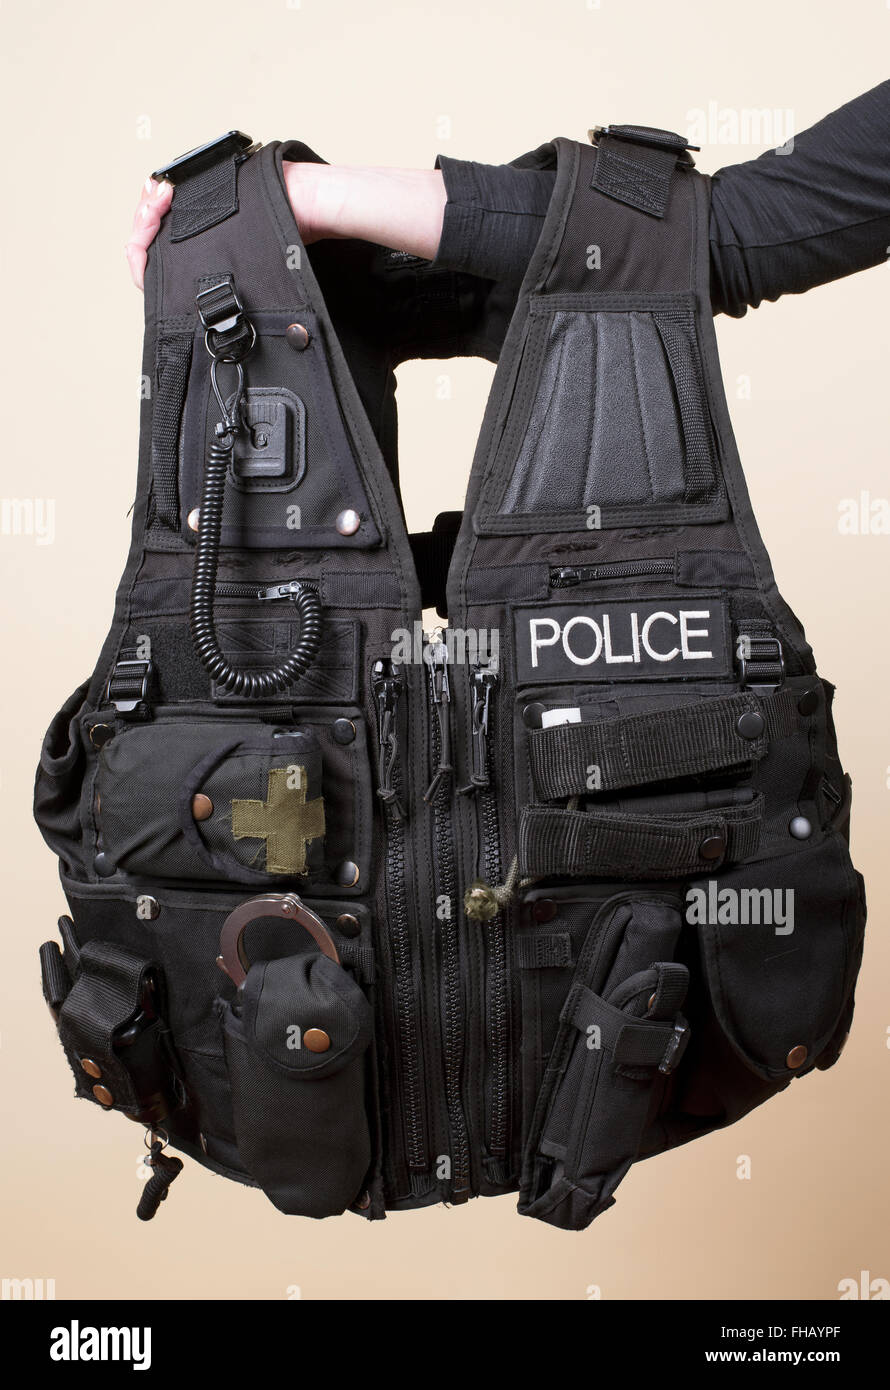 Polizei taktische Weste Stockfotografie - Alamy